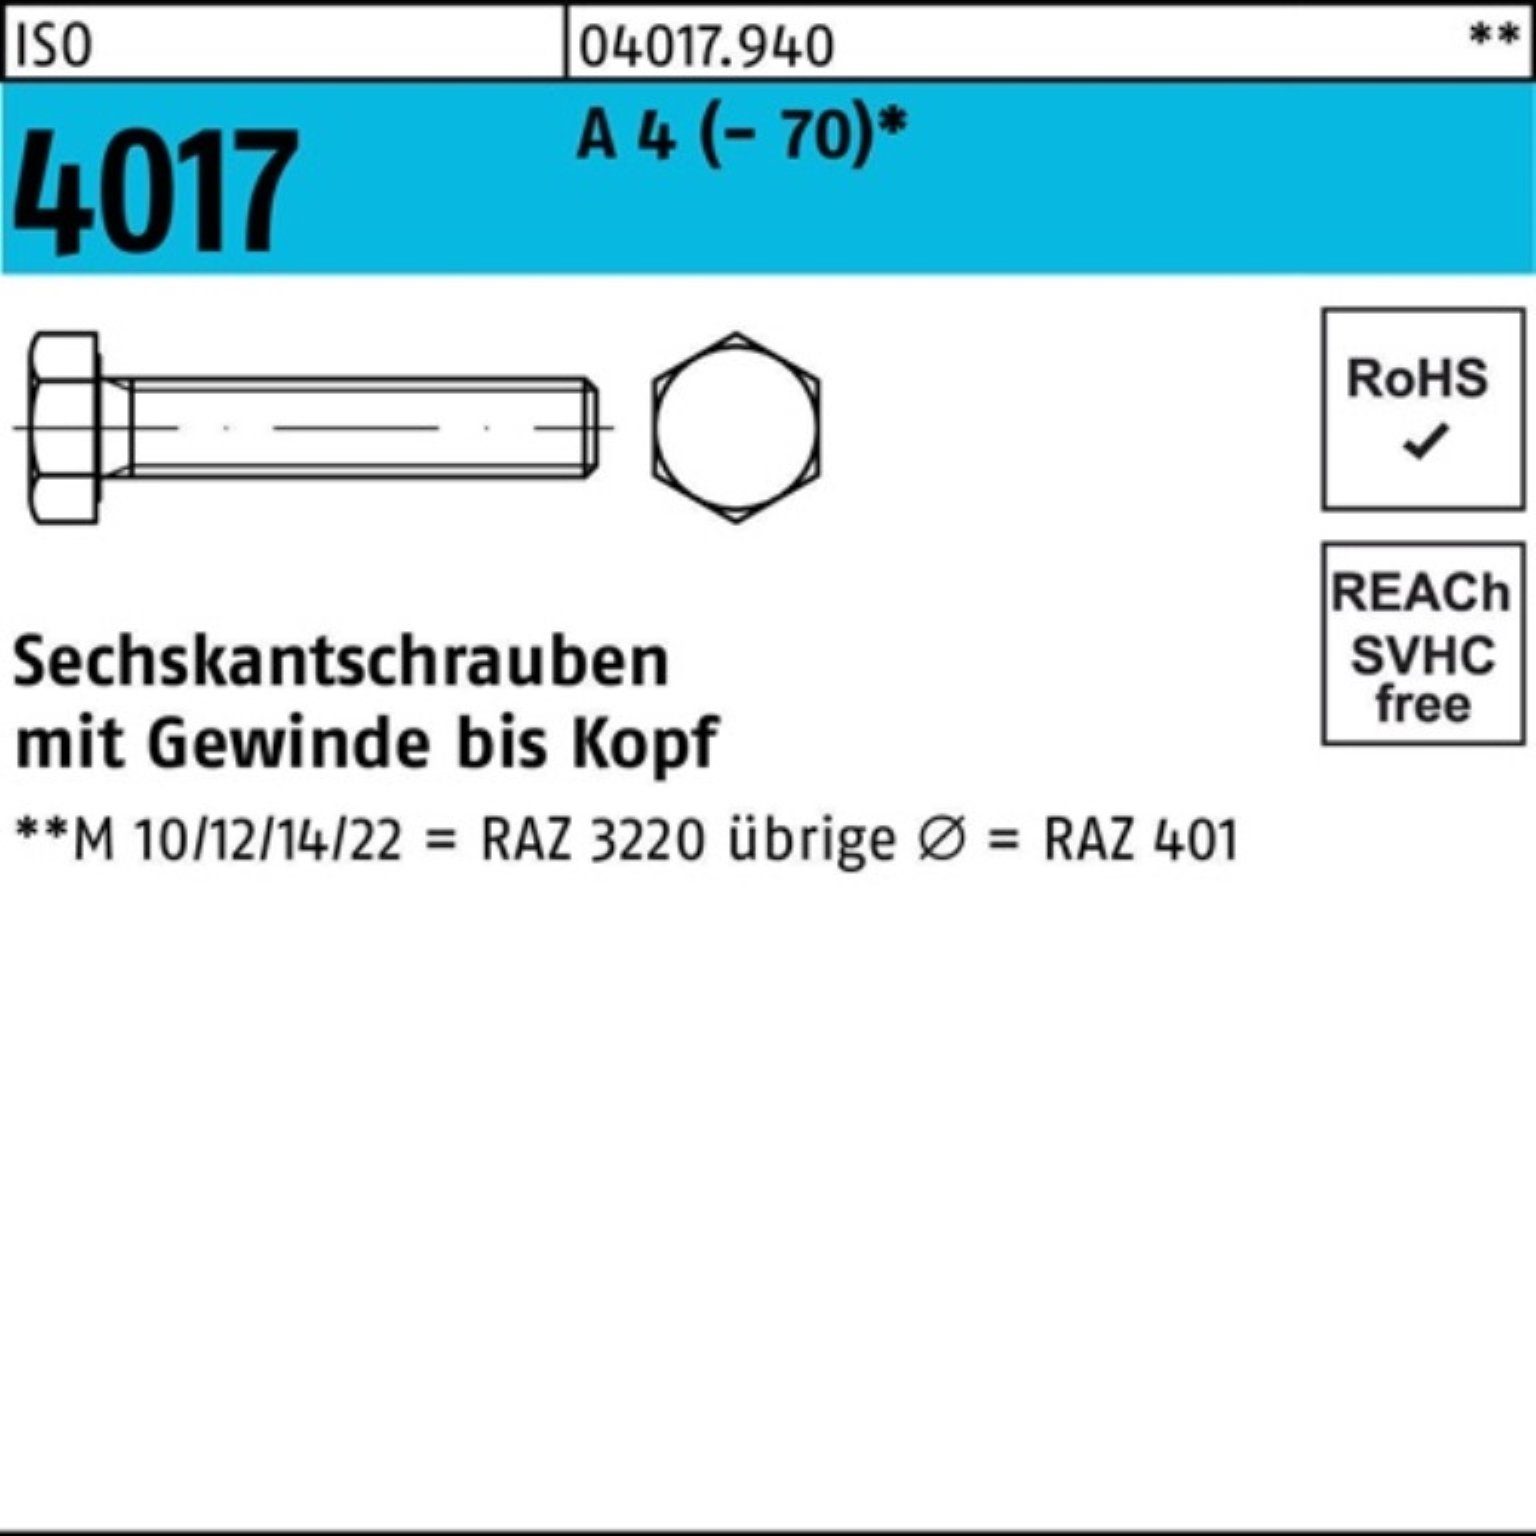 Bufab Sechskantschraube 100er Pack Sechskantschraube ISO 4017 VG M8x 200 A 4 (70) 1 Stück I